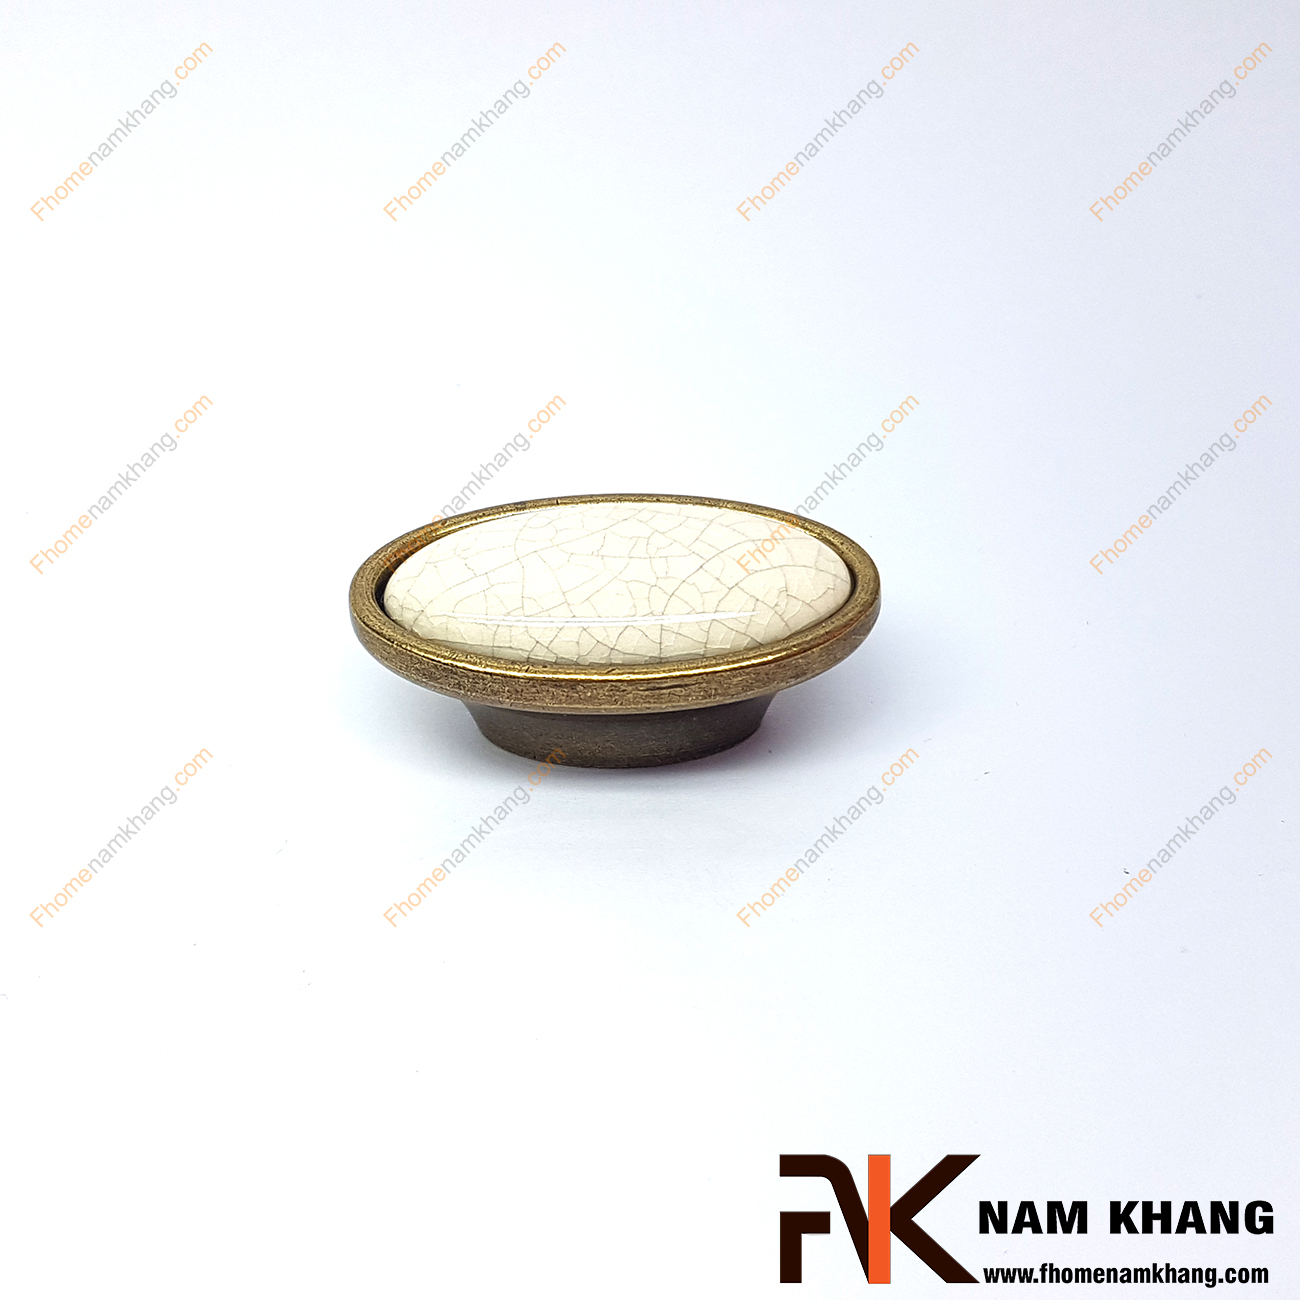 Núm nắm tủ màu đồng rêu NK292-C được thiết kế với khuôn dạng tròn, bên trên là viên sứ tròn với đường vân rõ nét được bao bọc bởi chân đế hợp kim mạ đồng rêu